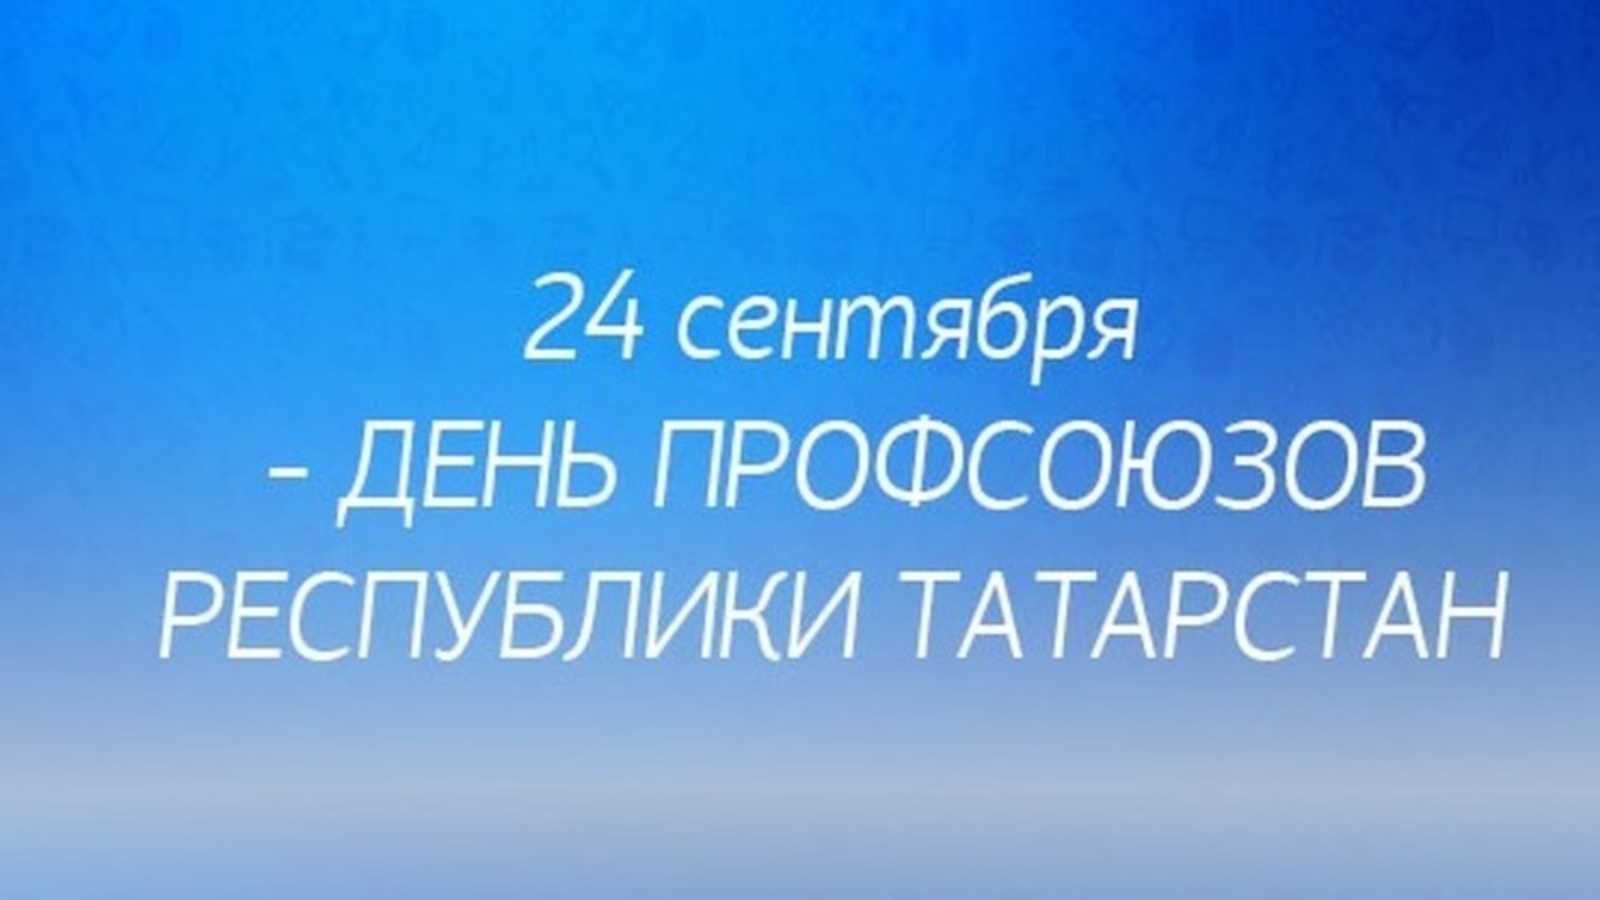 День профсоюзов Республики Татарстан